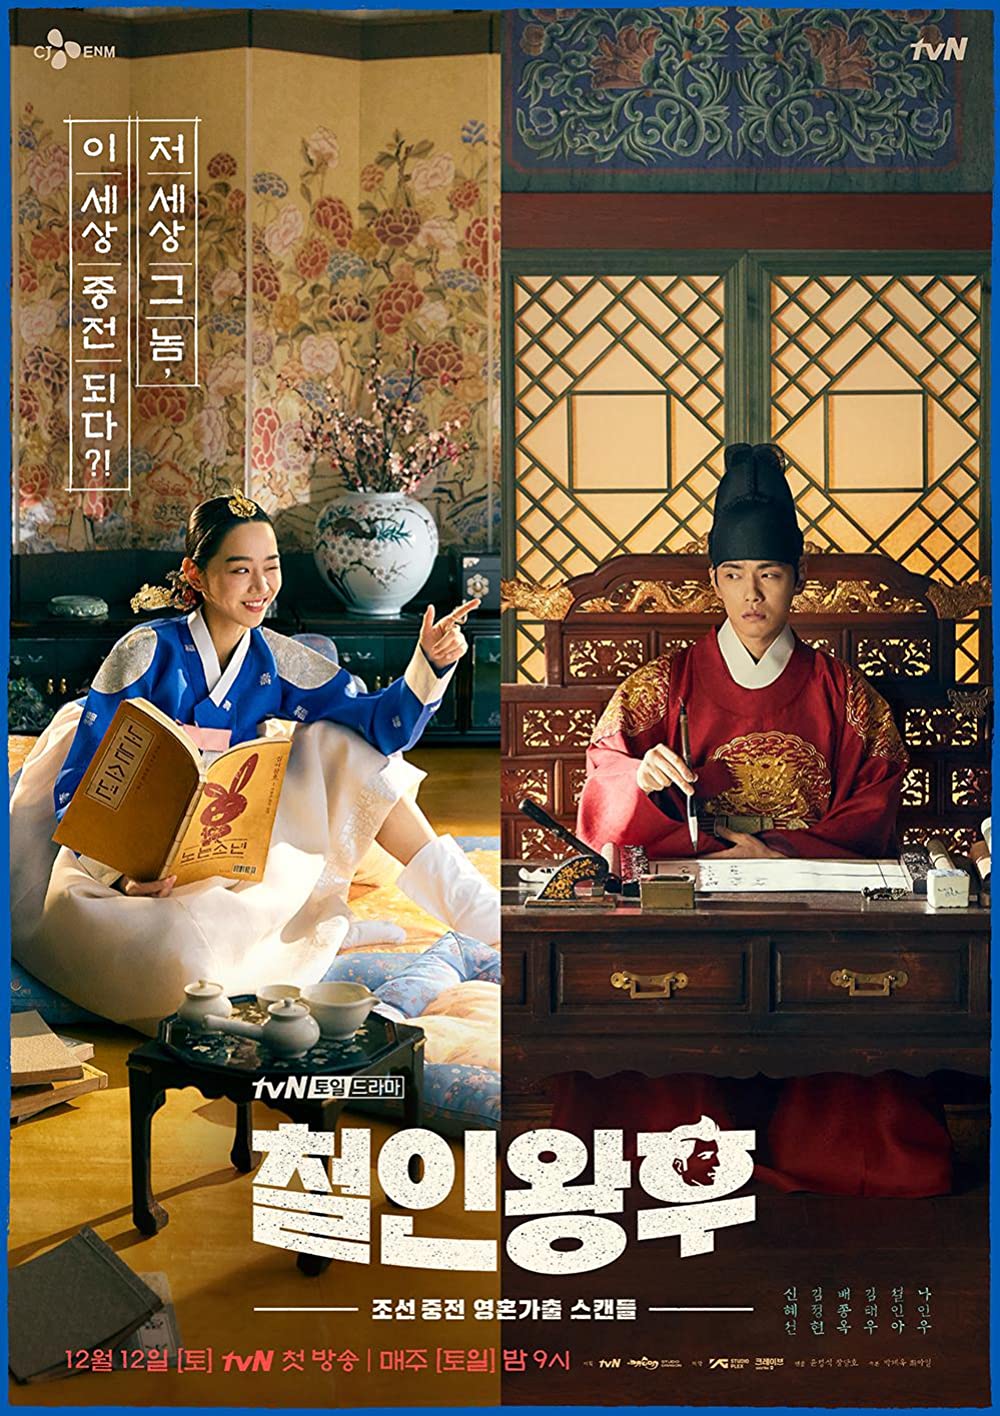 11 Drama Korea tentang kerajaan penuh kisah fiksi, Mr. Queen lucu abis